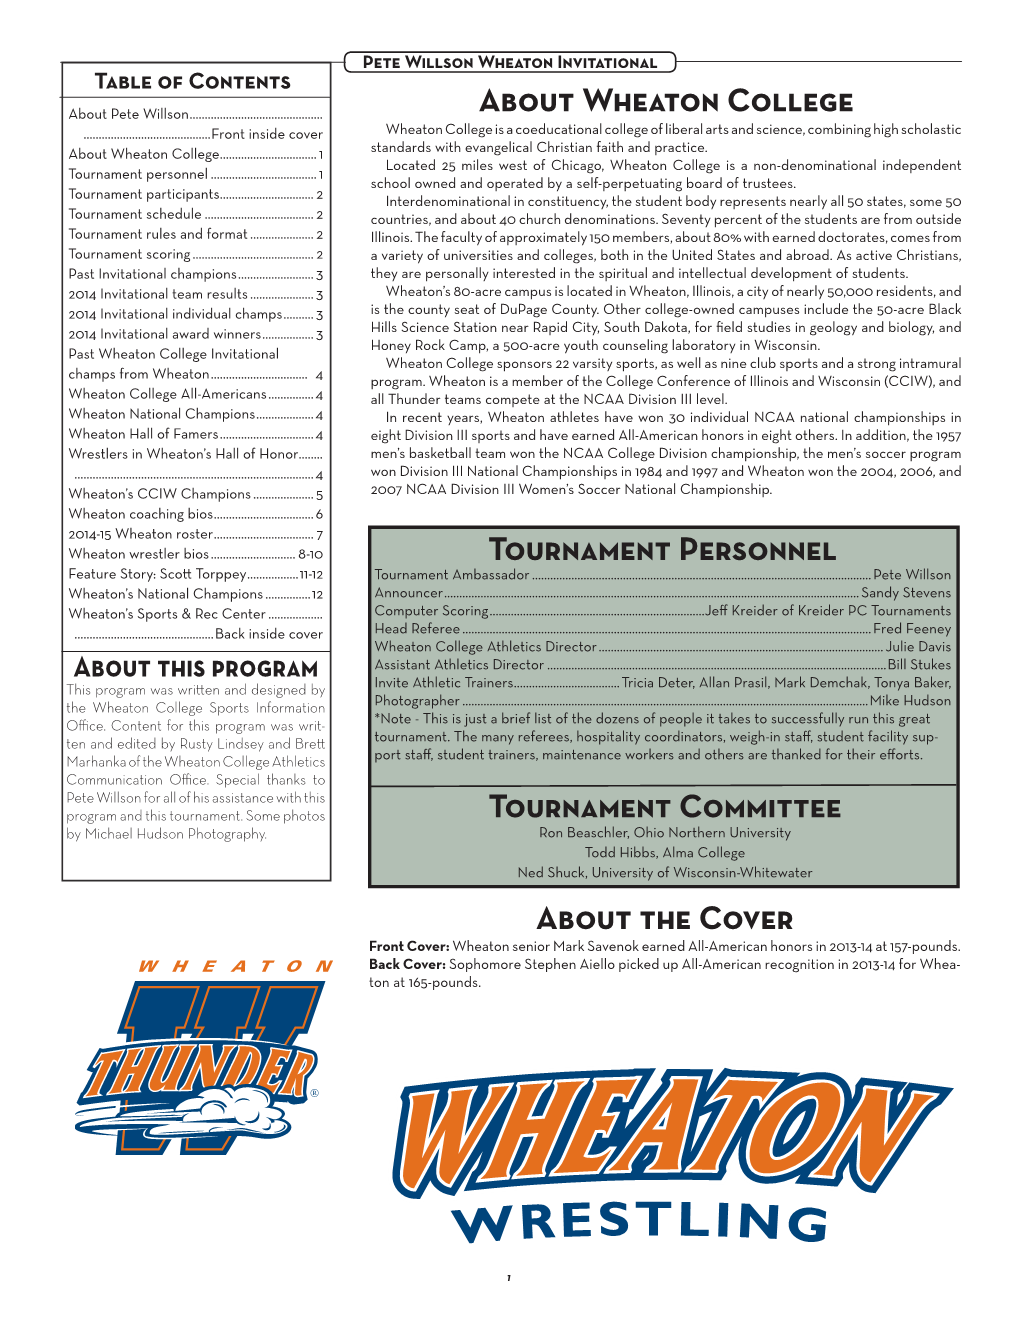 About Wheaton College Tournament Personnel